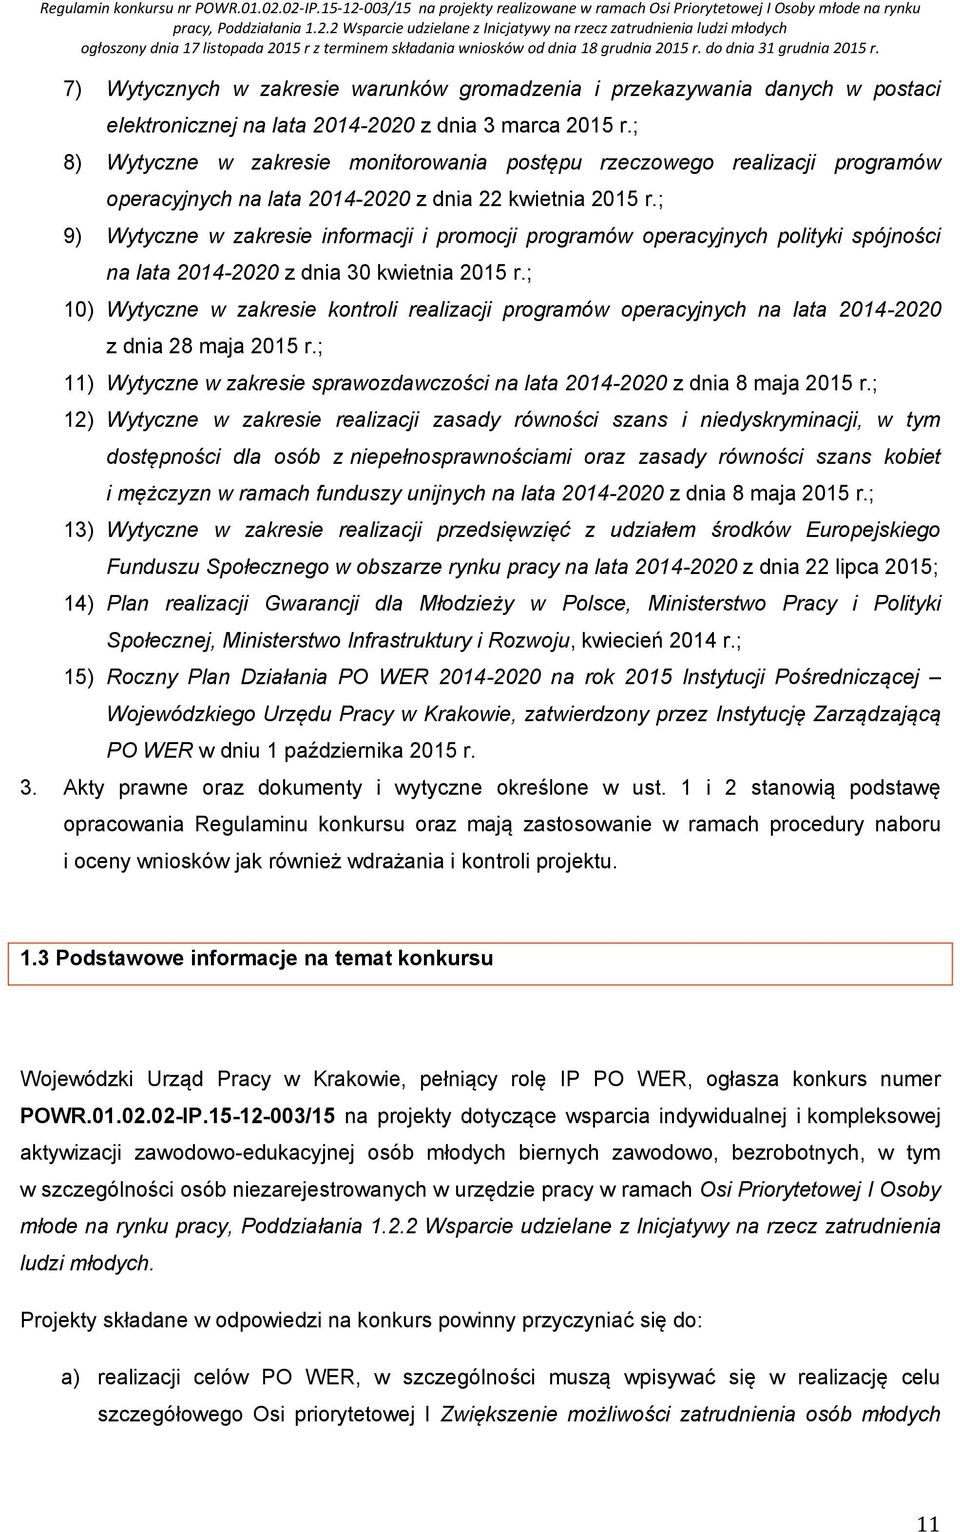 ; 9) Wytyczne w zakresie informacji i promocji programów operacyjnych polityki spójności na lata 2014-2020 z dnia 30 kwietnia 2015 r.